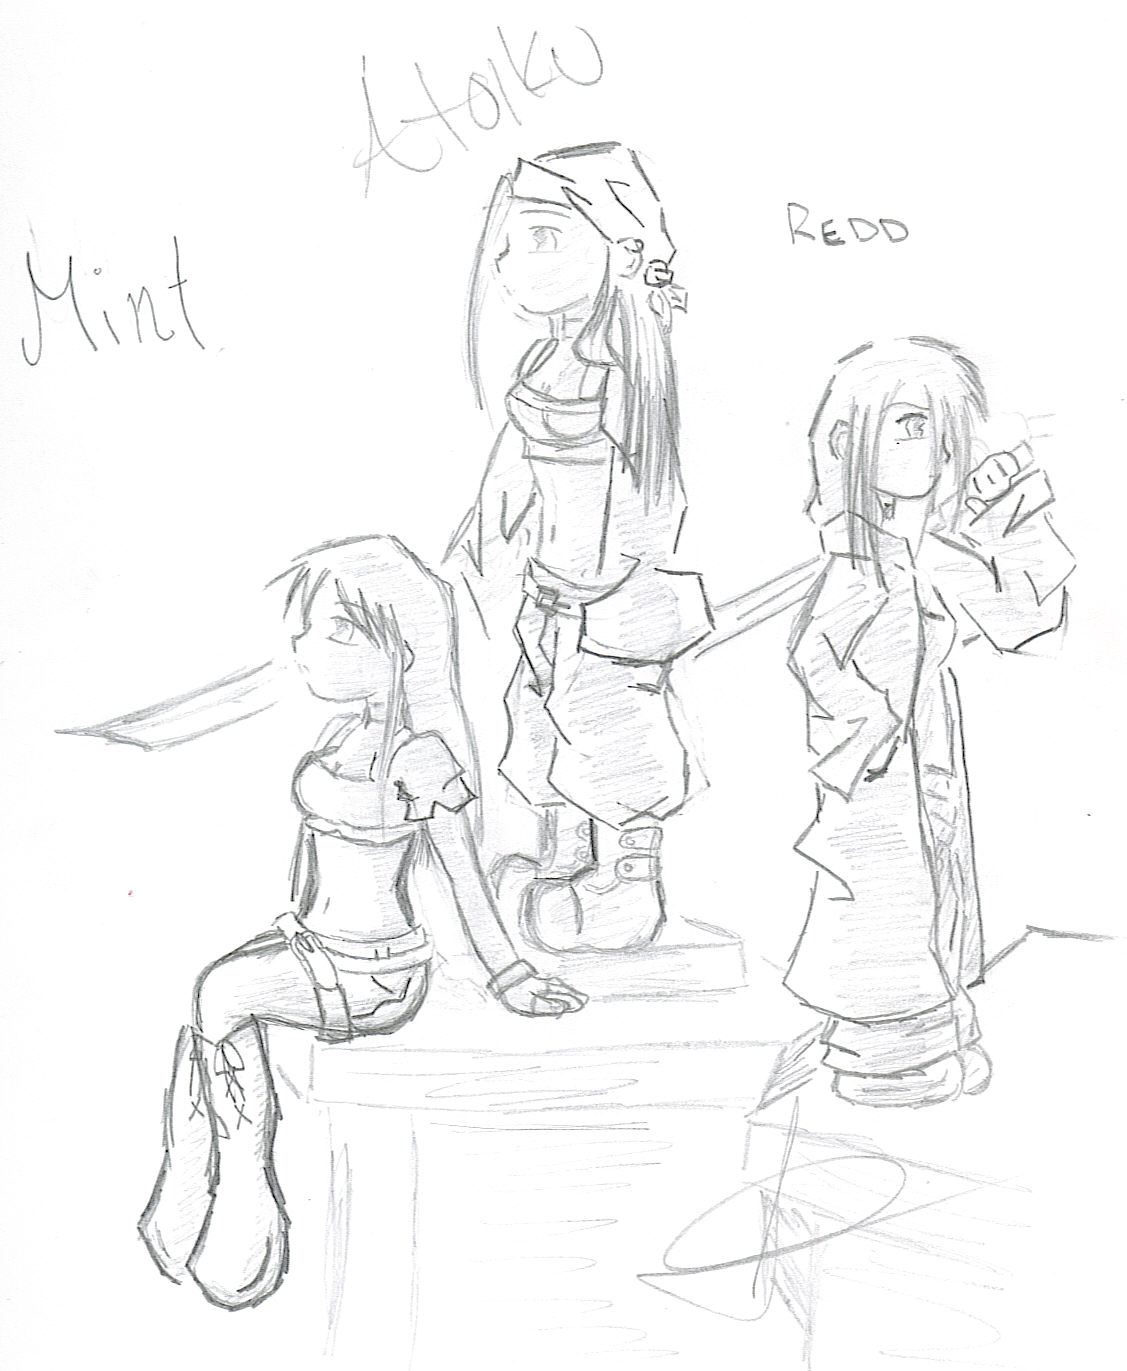 Mint Atoiku & Redd by Mint